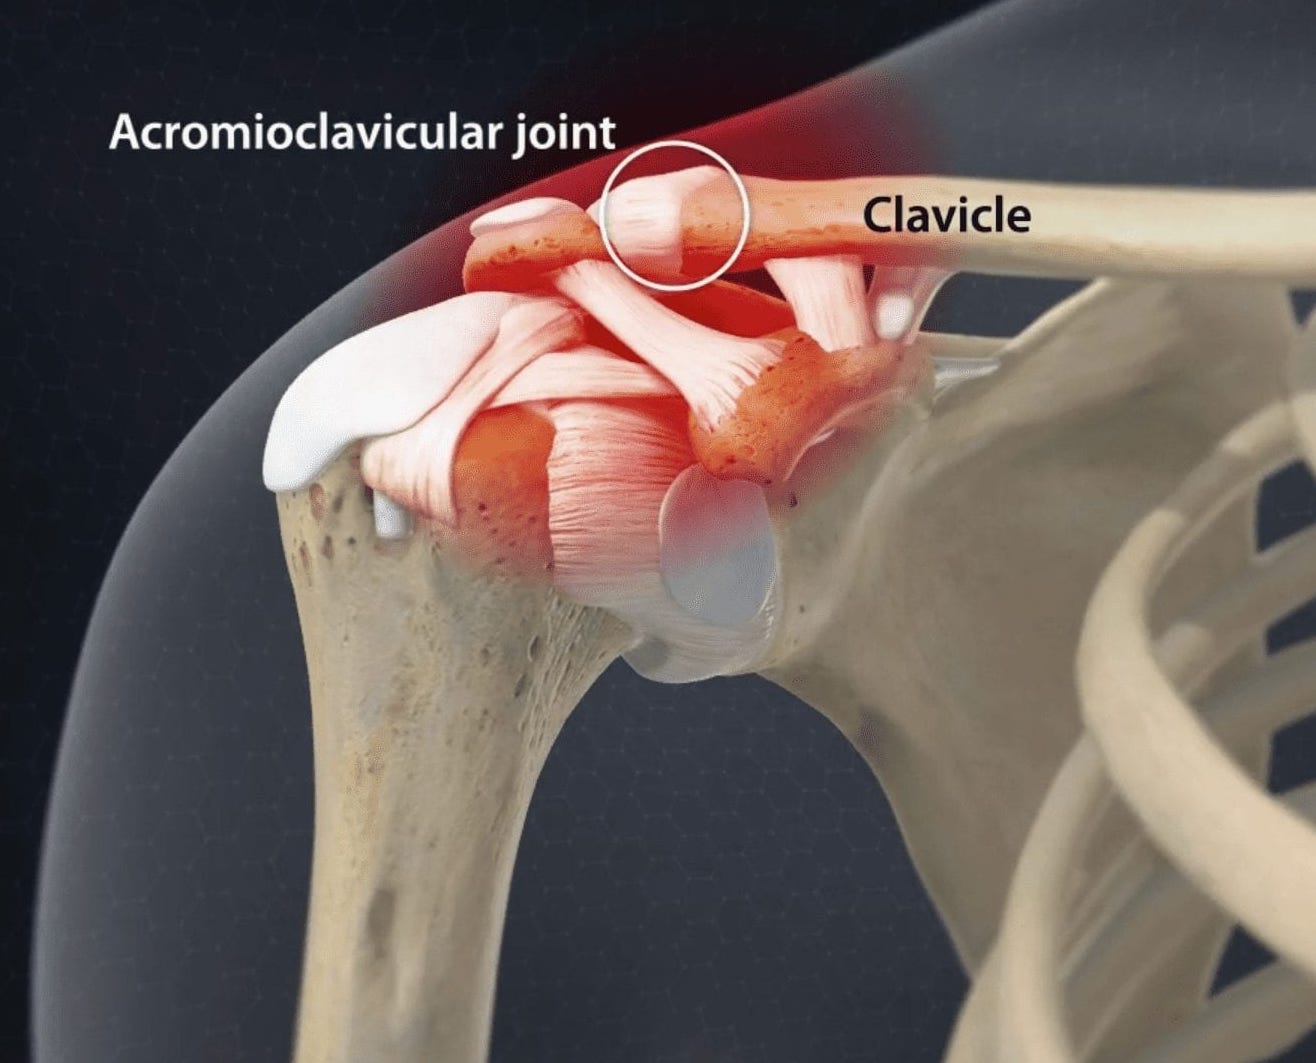 Le ligament acromio-claviculaire relie l’os de la clavicule à l’acromion, une partie de l’omoplate. Une luxation de stade 2 signifie une déchirure partielle ou une élongation de ce ligament